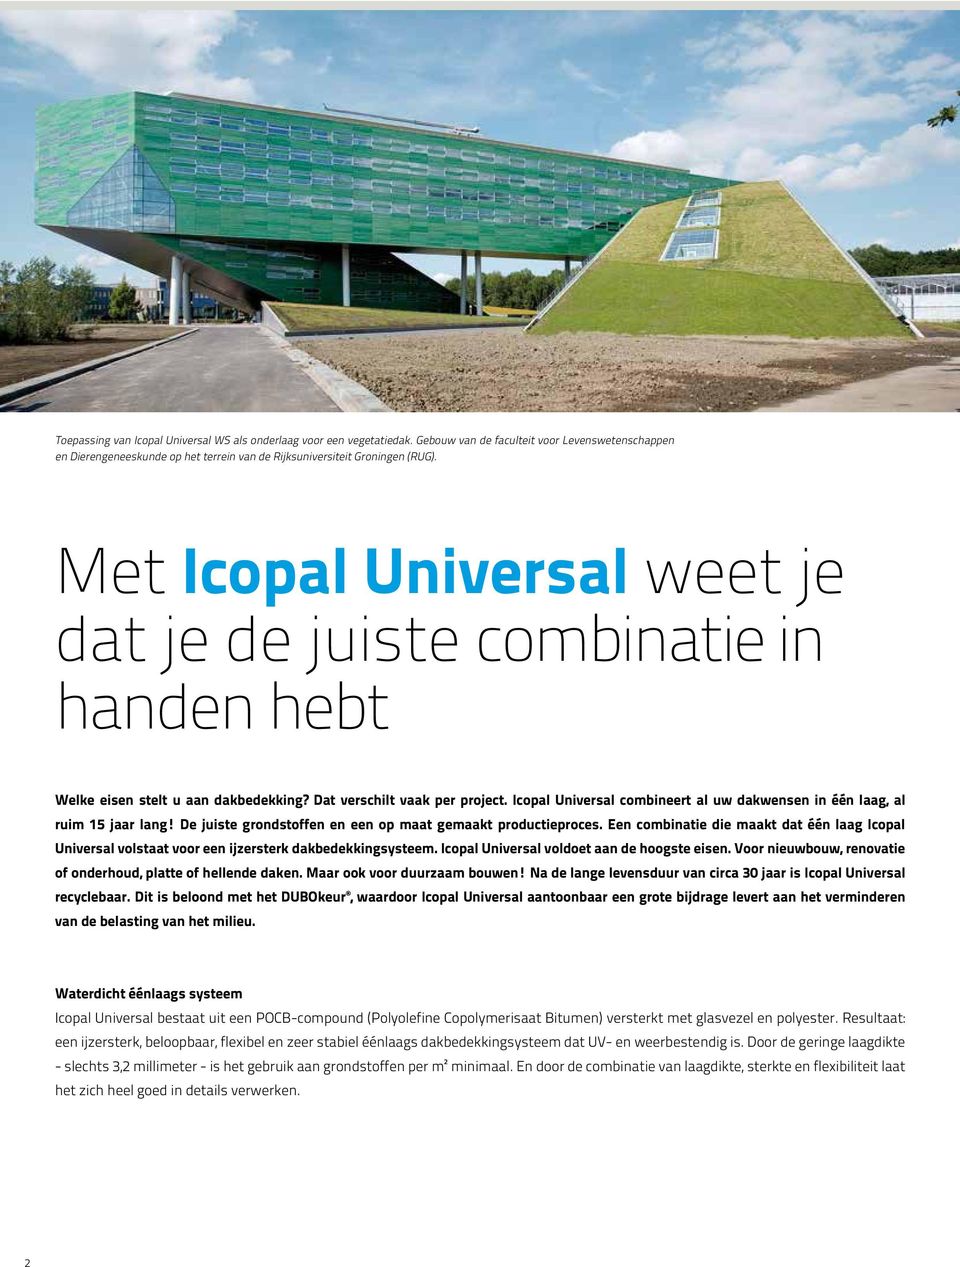 Icopal Universal combineert al uw dakwensen in één laag, al ruim 15 jaar lang! De juiste grondstoffen en een op maat gemaakt productieproces.